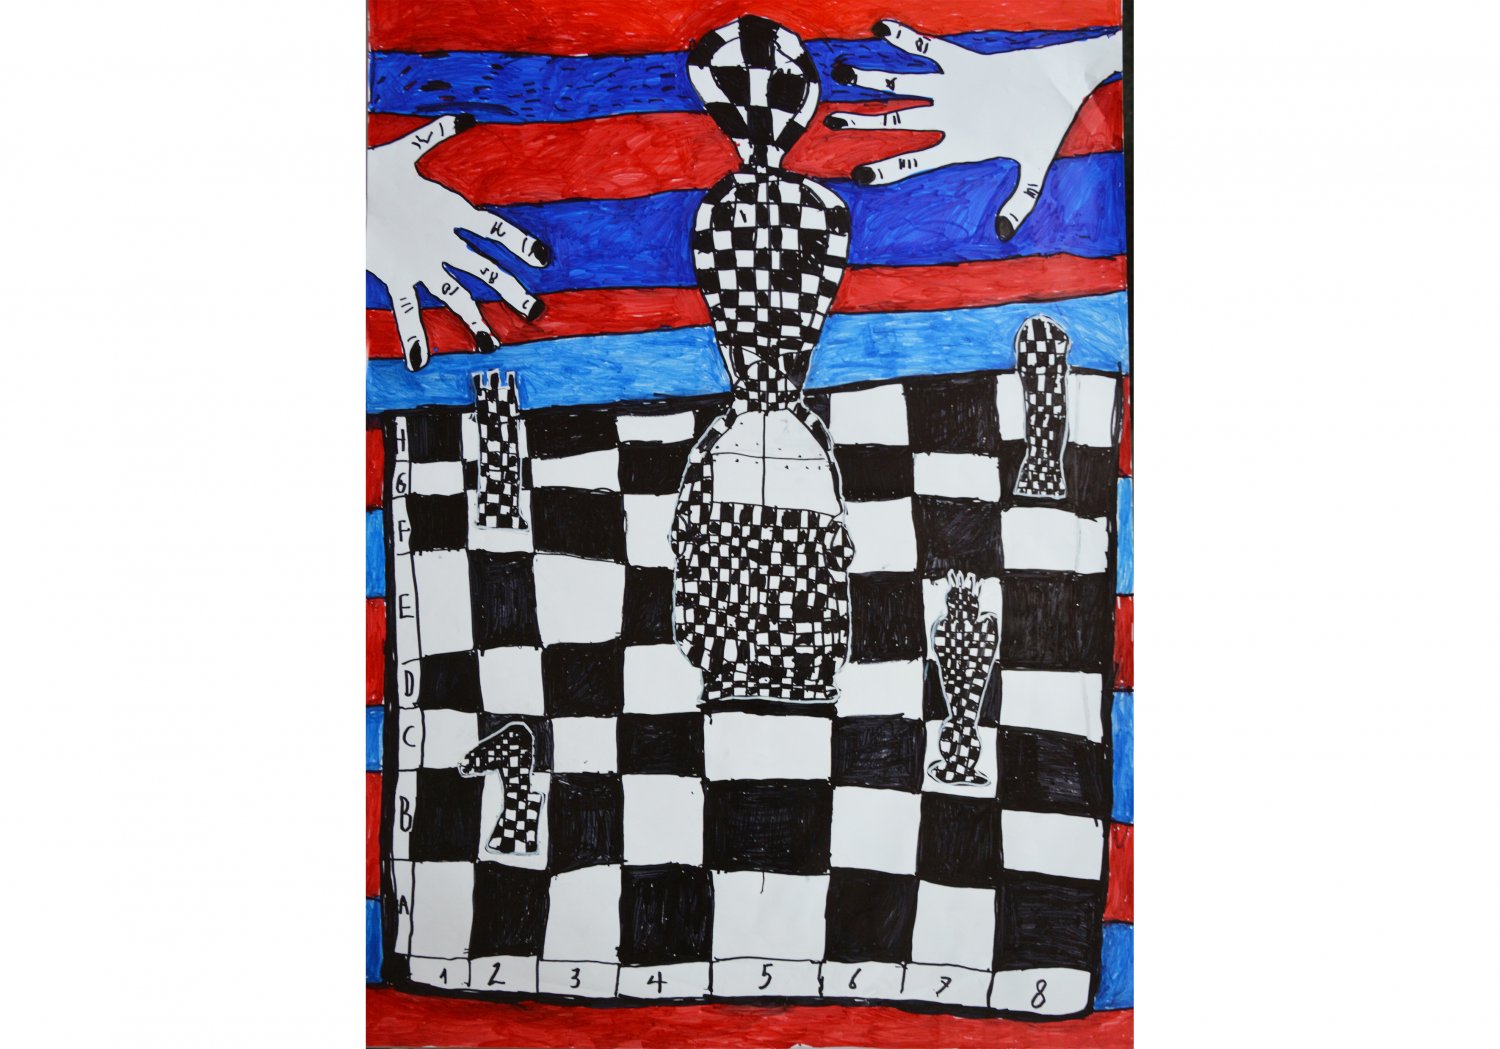 I miejsce: Mikołaj Janeczek. Tytuł “Gra w szachy”
Obraz przedstawia plansze do gry z figurami szachowymi. Z boku widać dłonie graczy. Ciekawe połączenie kolorystyczne czerwieni granatu i czerni.